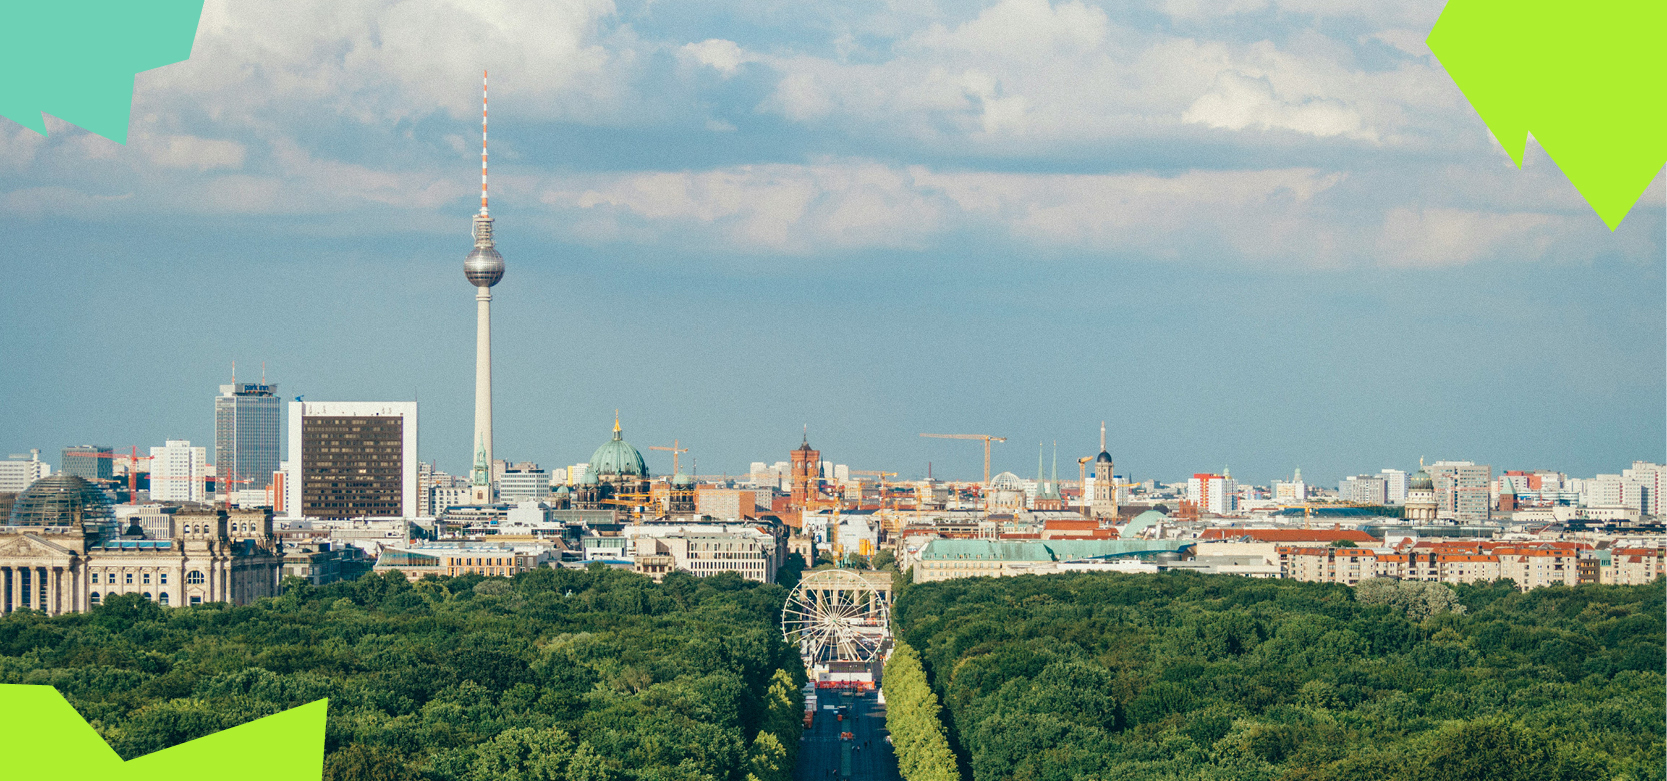 Hallo BERLIN: recyclehero holt jetzt kostenlos deine Altkleider ab!